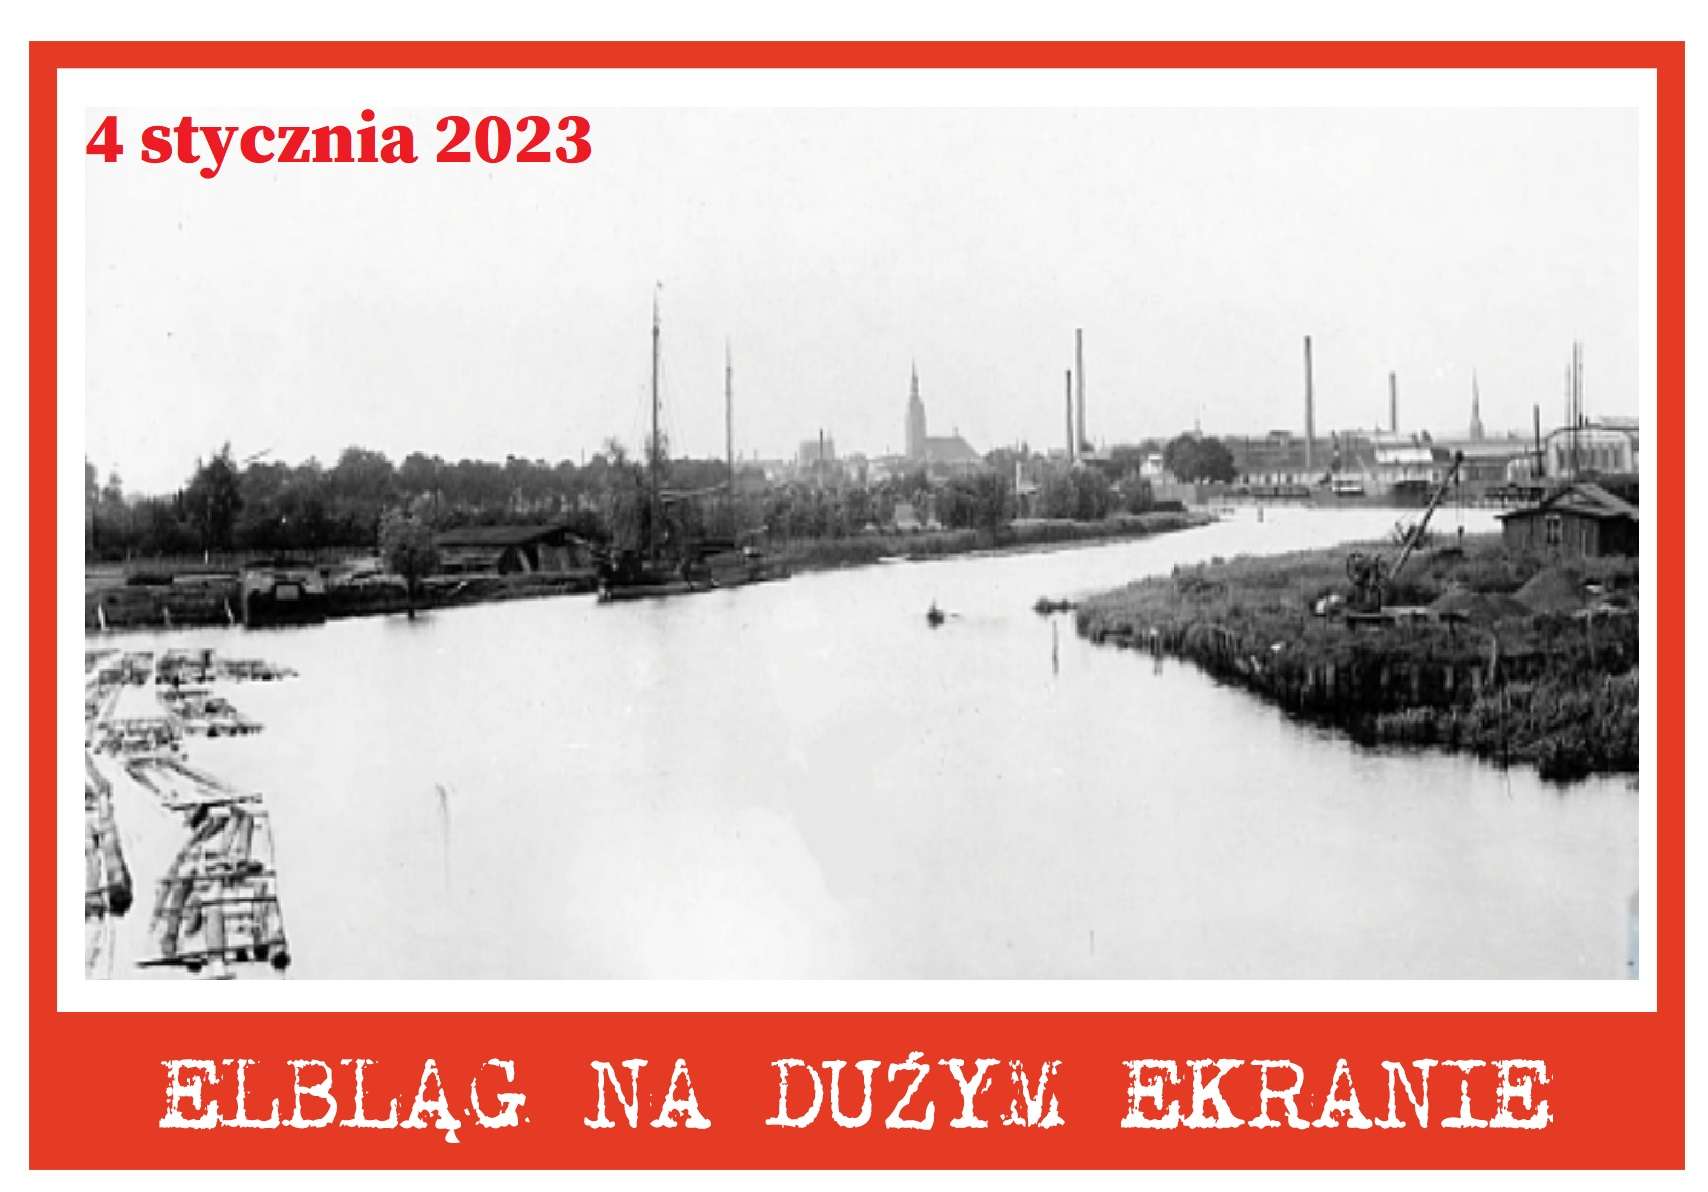 Flisacy w Elblągu – w pierwszą środę 2023 roku na dużym ekranie